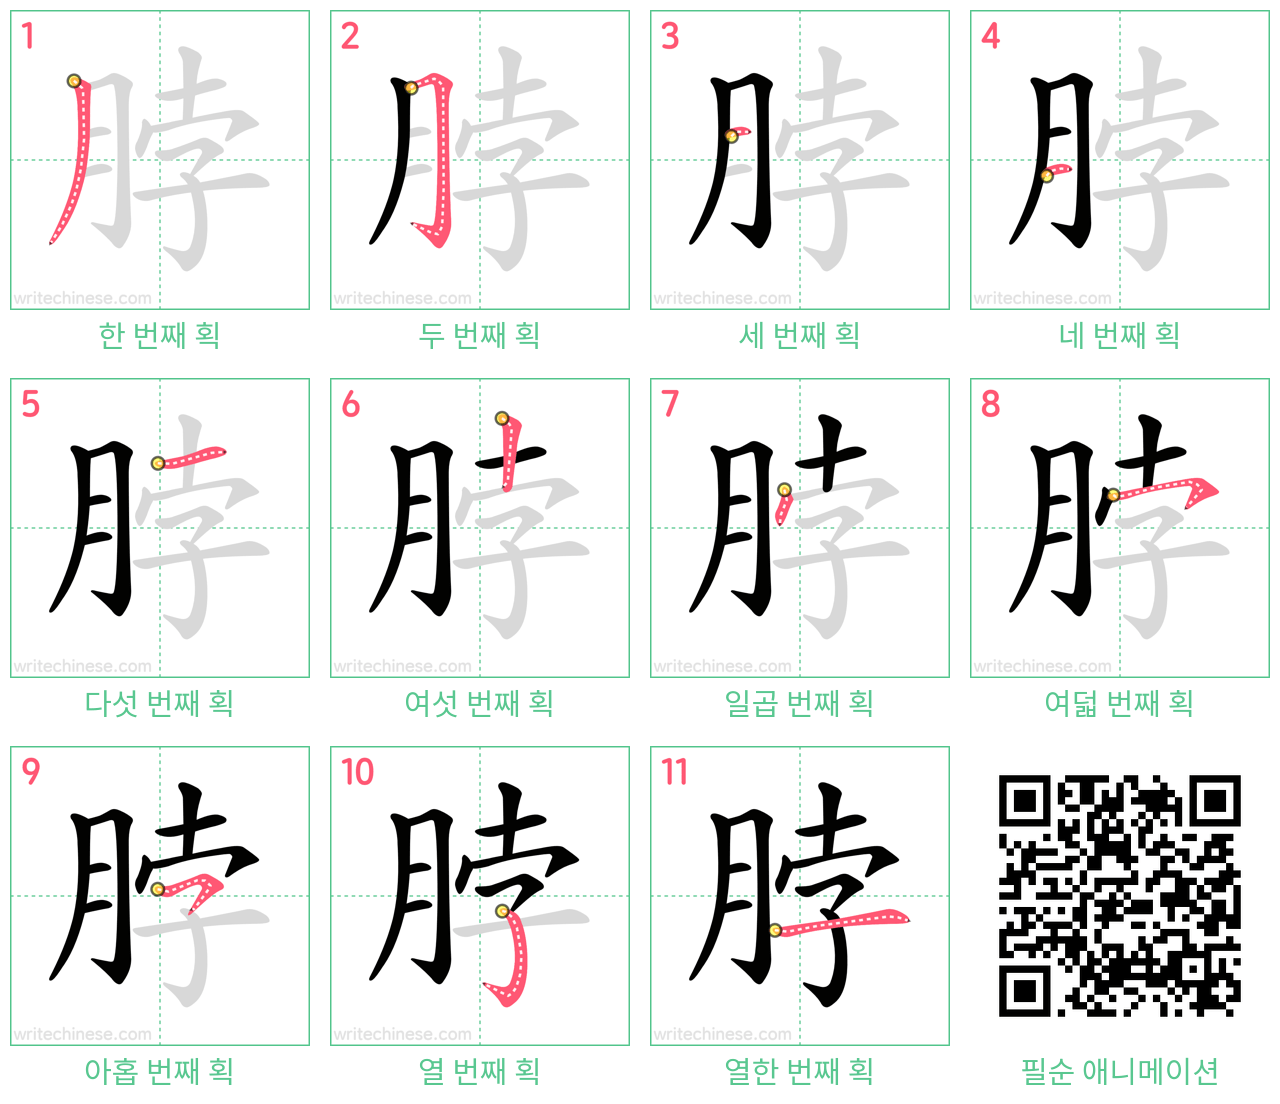 脖 step-by-step stroke order diagrams